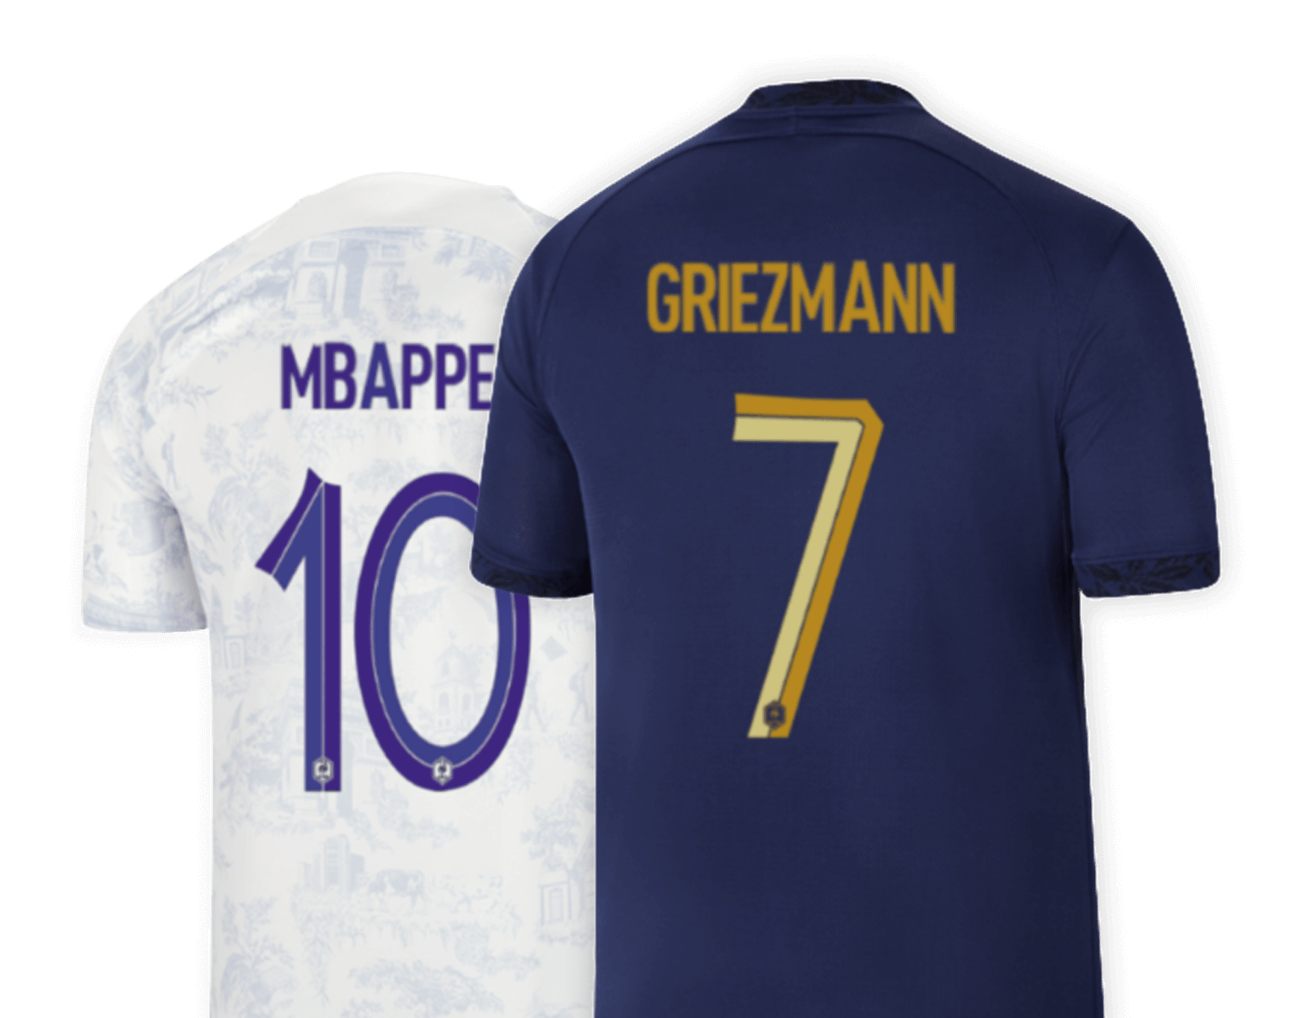 T-Shirt Maillot Football Homme Brésil - Supportez Votre Équipe Préférée